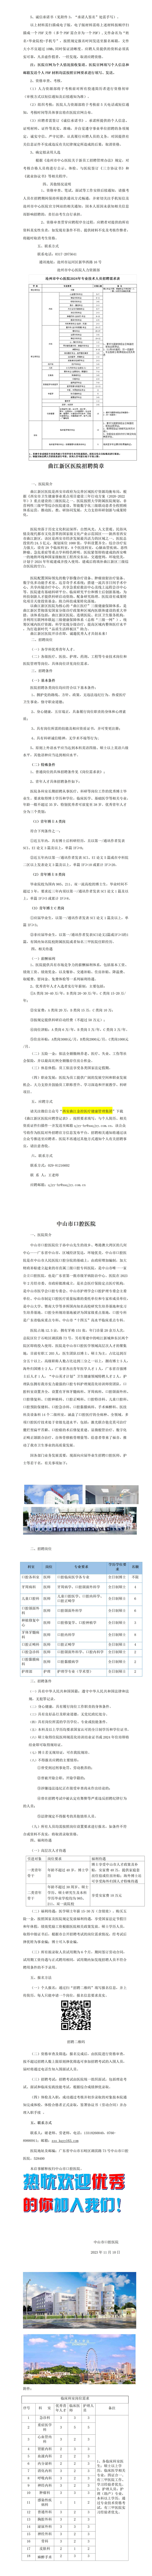 11月份宣传文件——西安交通大学(1)_01(1).jpg